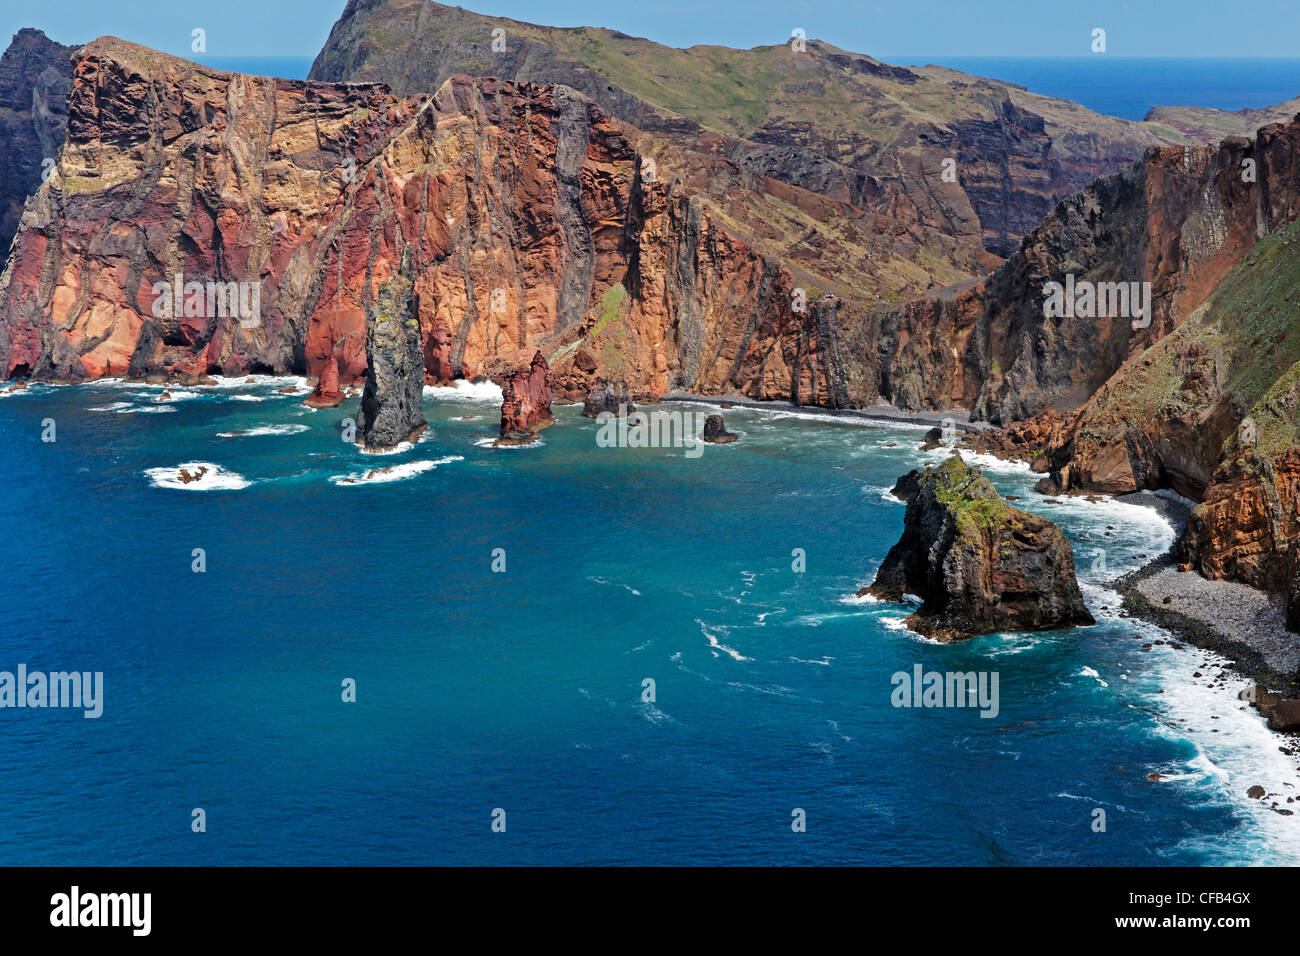 Europe, Portugal, Republica Portuguesa, Madeira, Porto do Canical, Ponta do Rosto, bay, cliffs, place of interest, tourism, wate Stock Photo